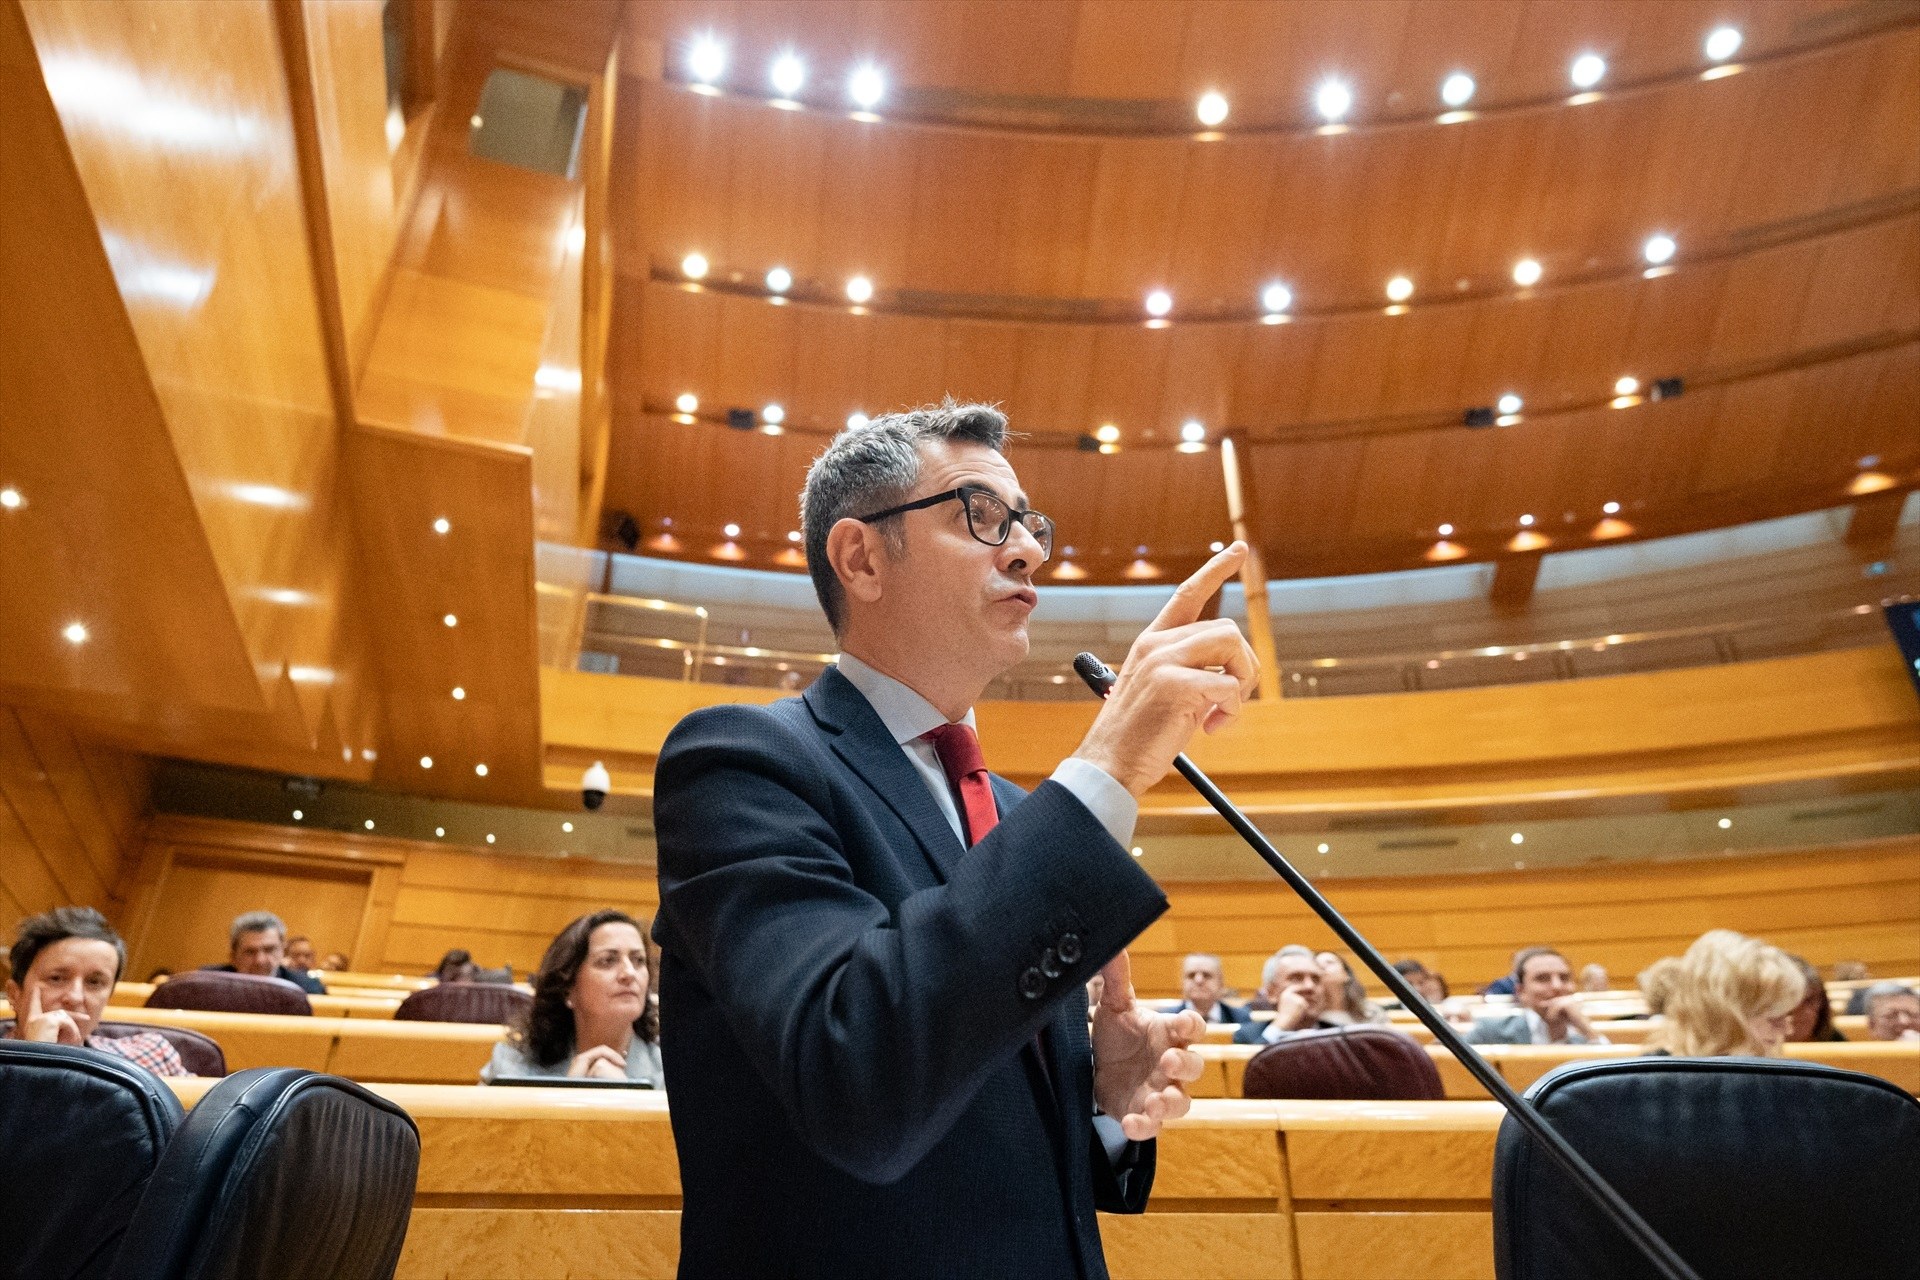 Bolaños defensa els jutges davant les acusacions de lawfare de Junts al Senat